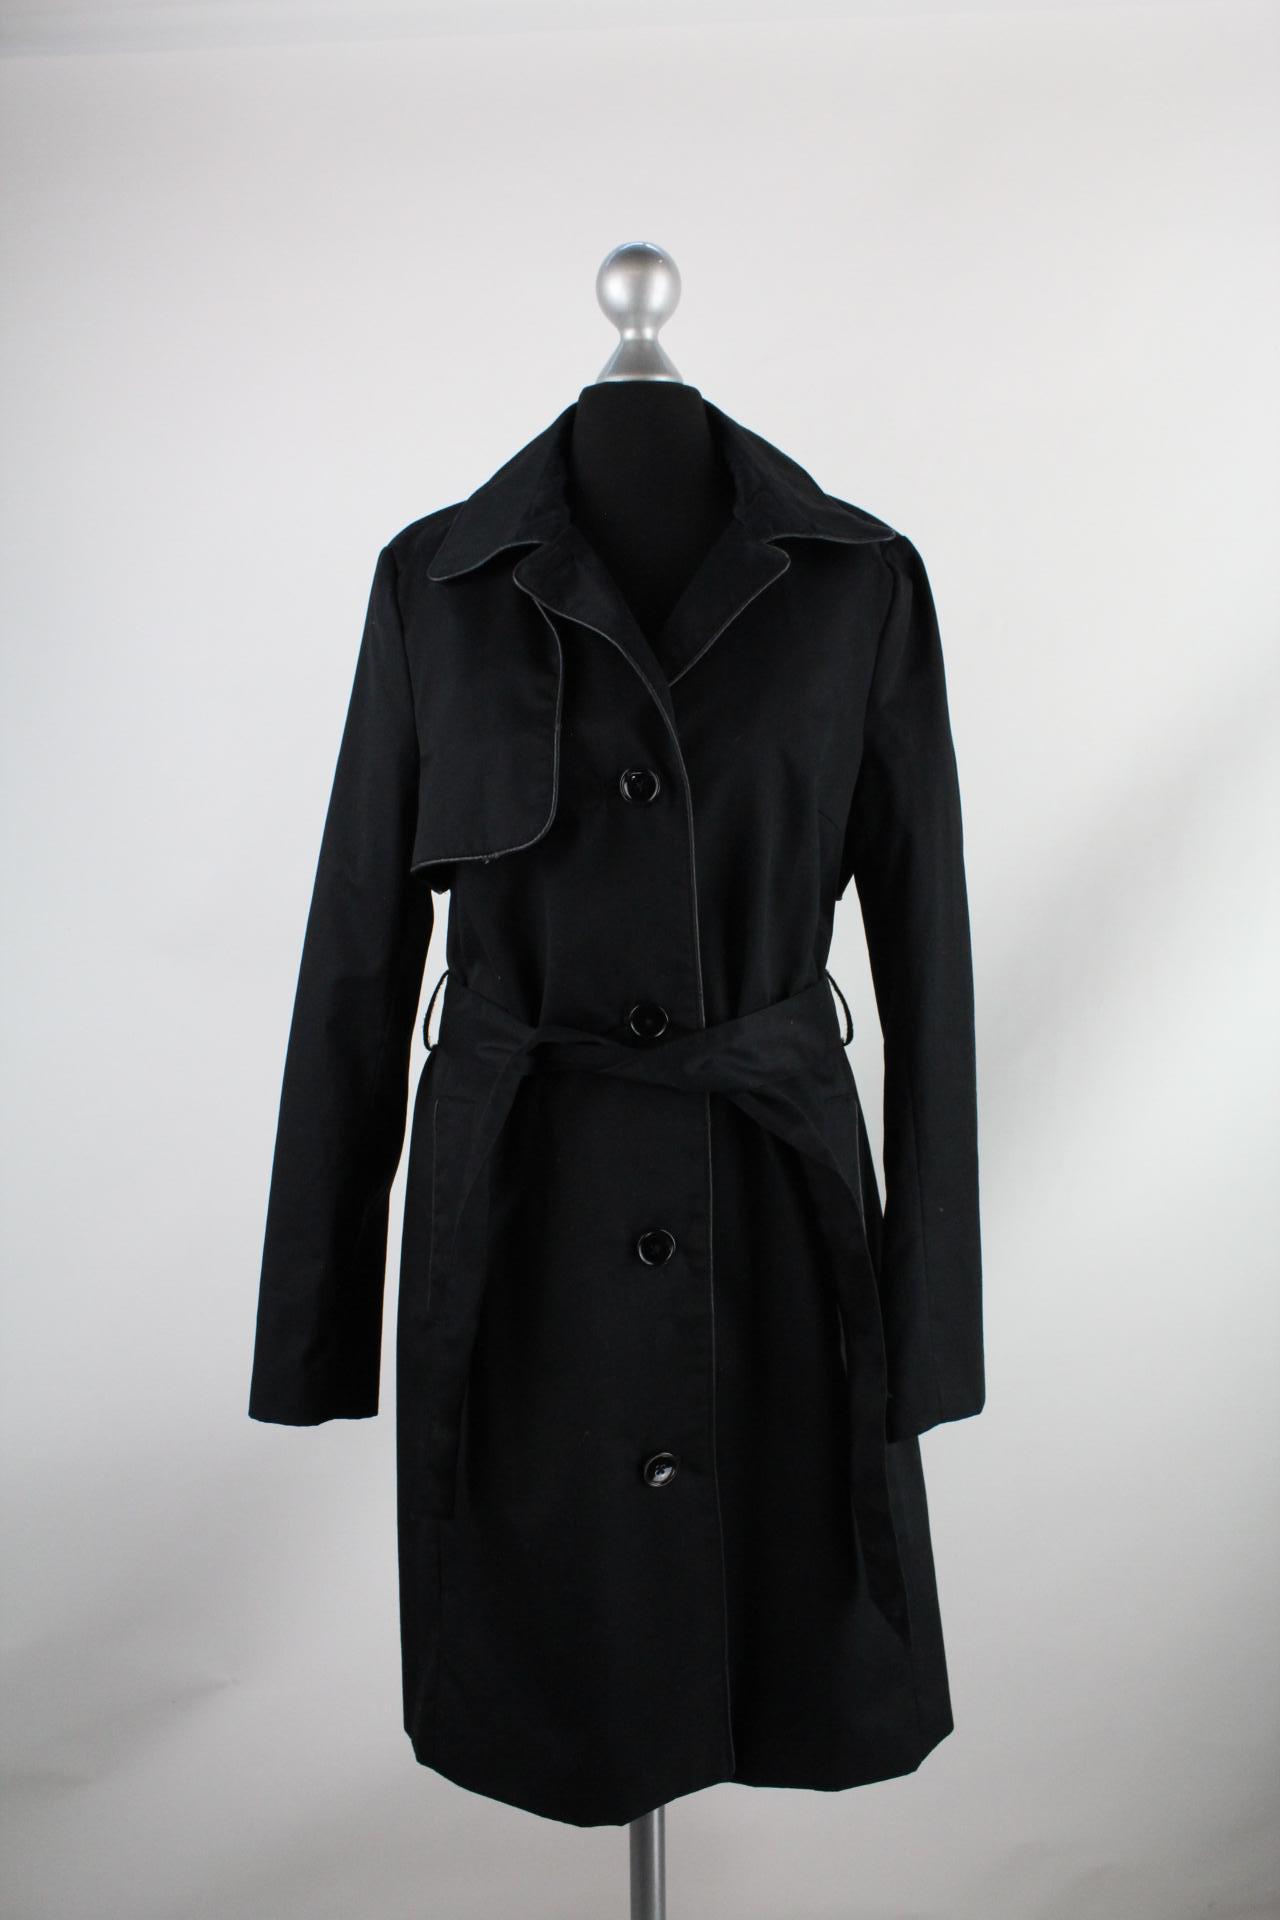 H&M Damen-Mantel schwarz Größe 38